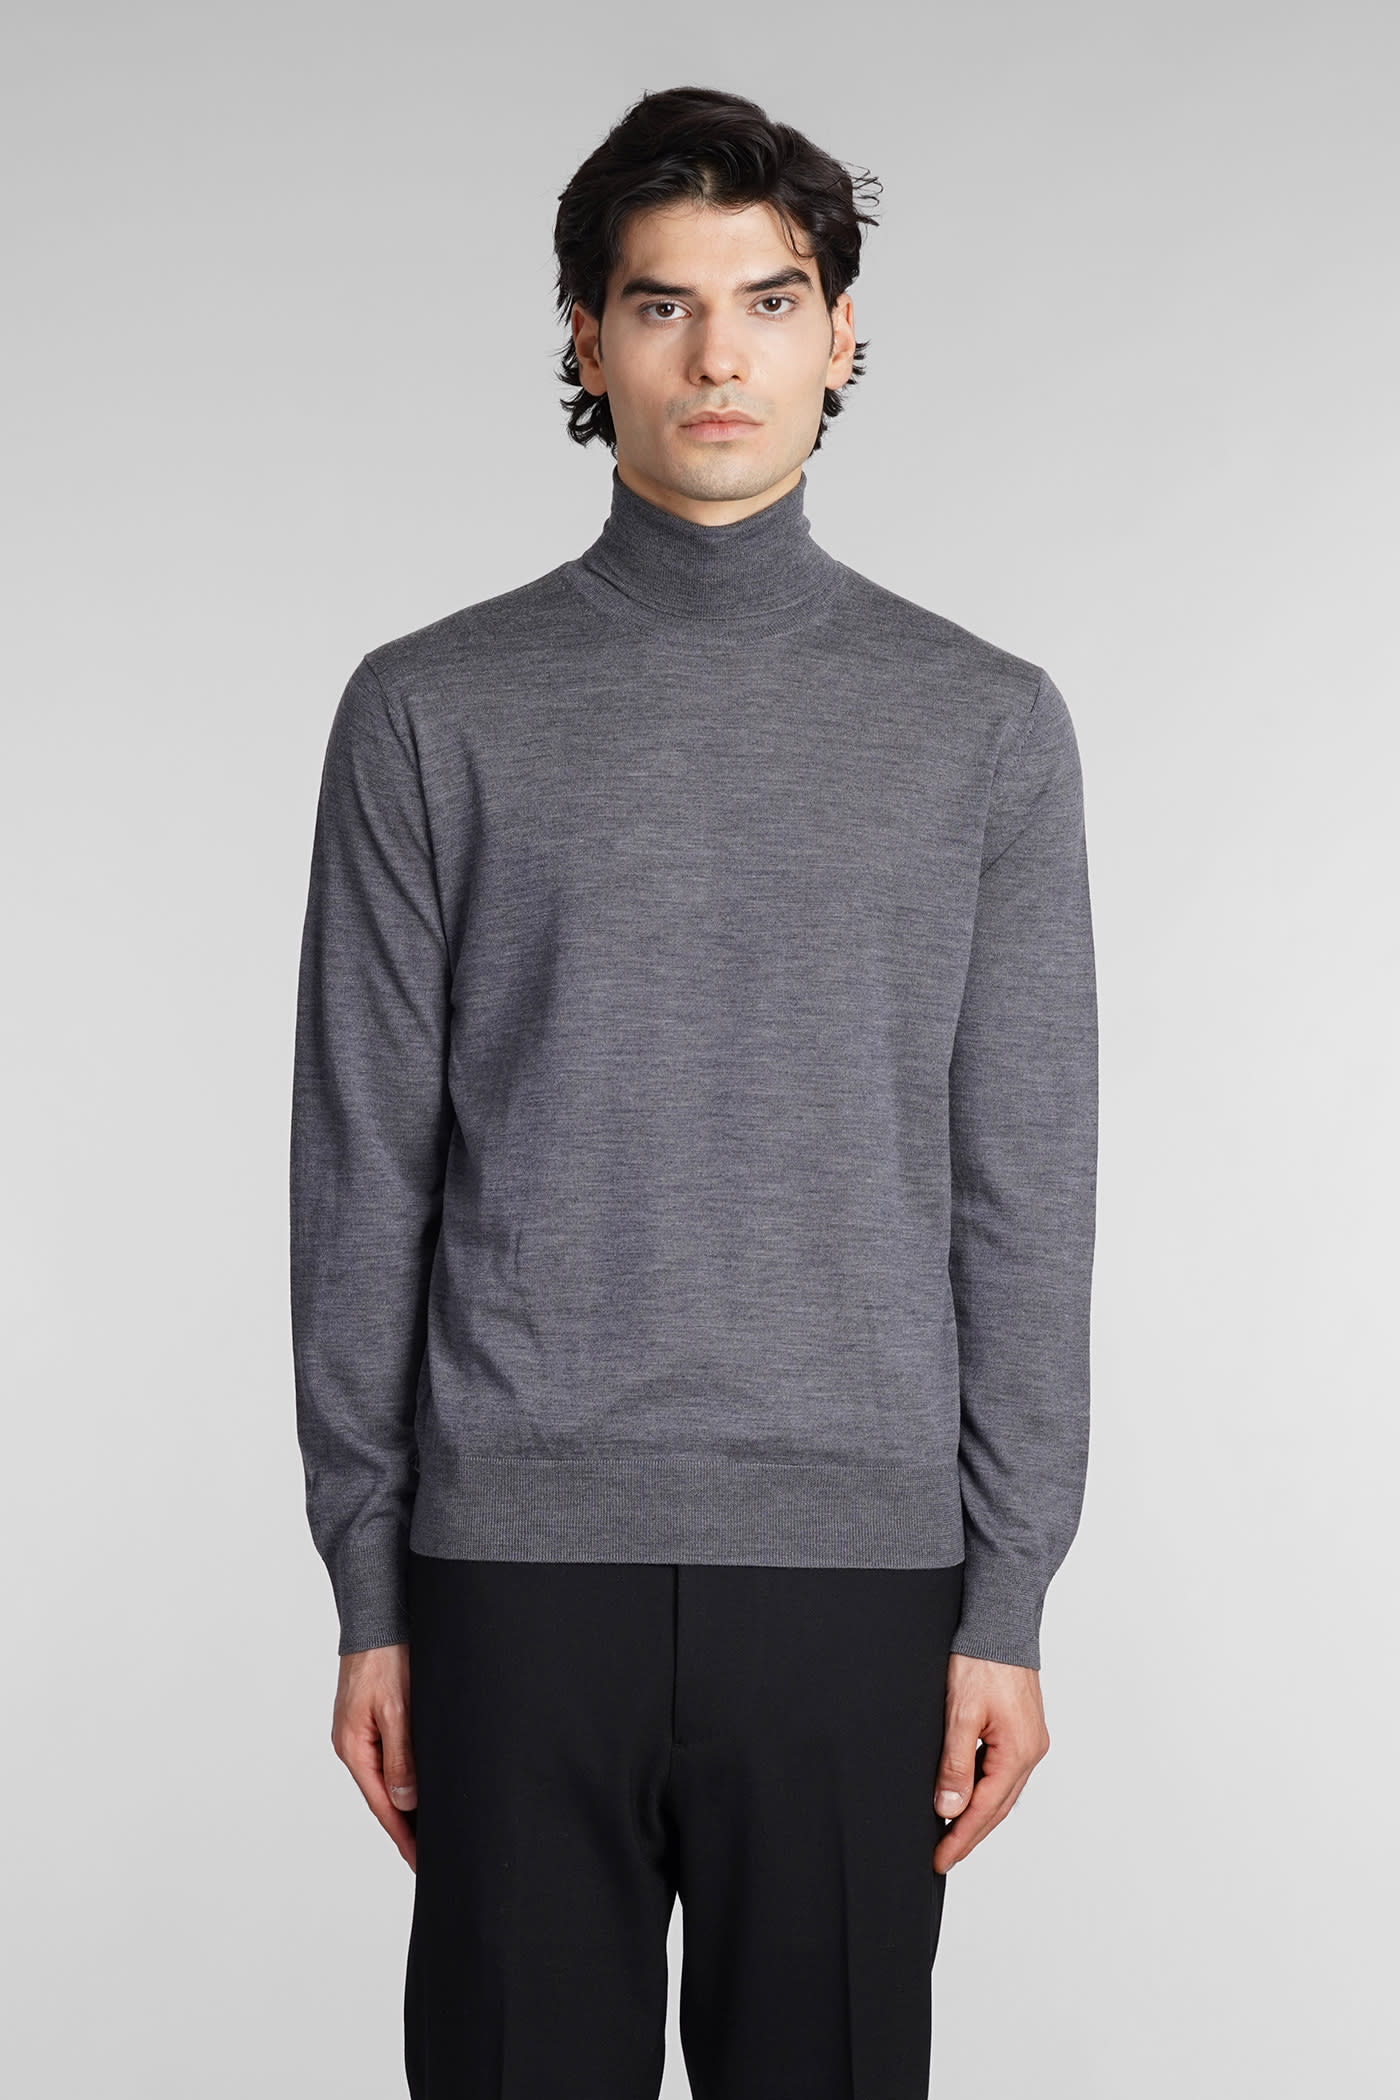 ballantyne knitwear in grey wool